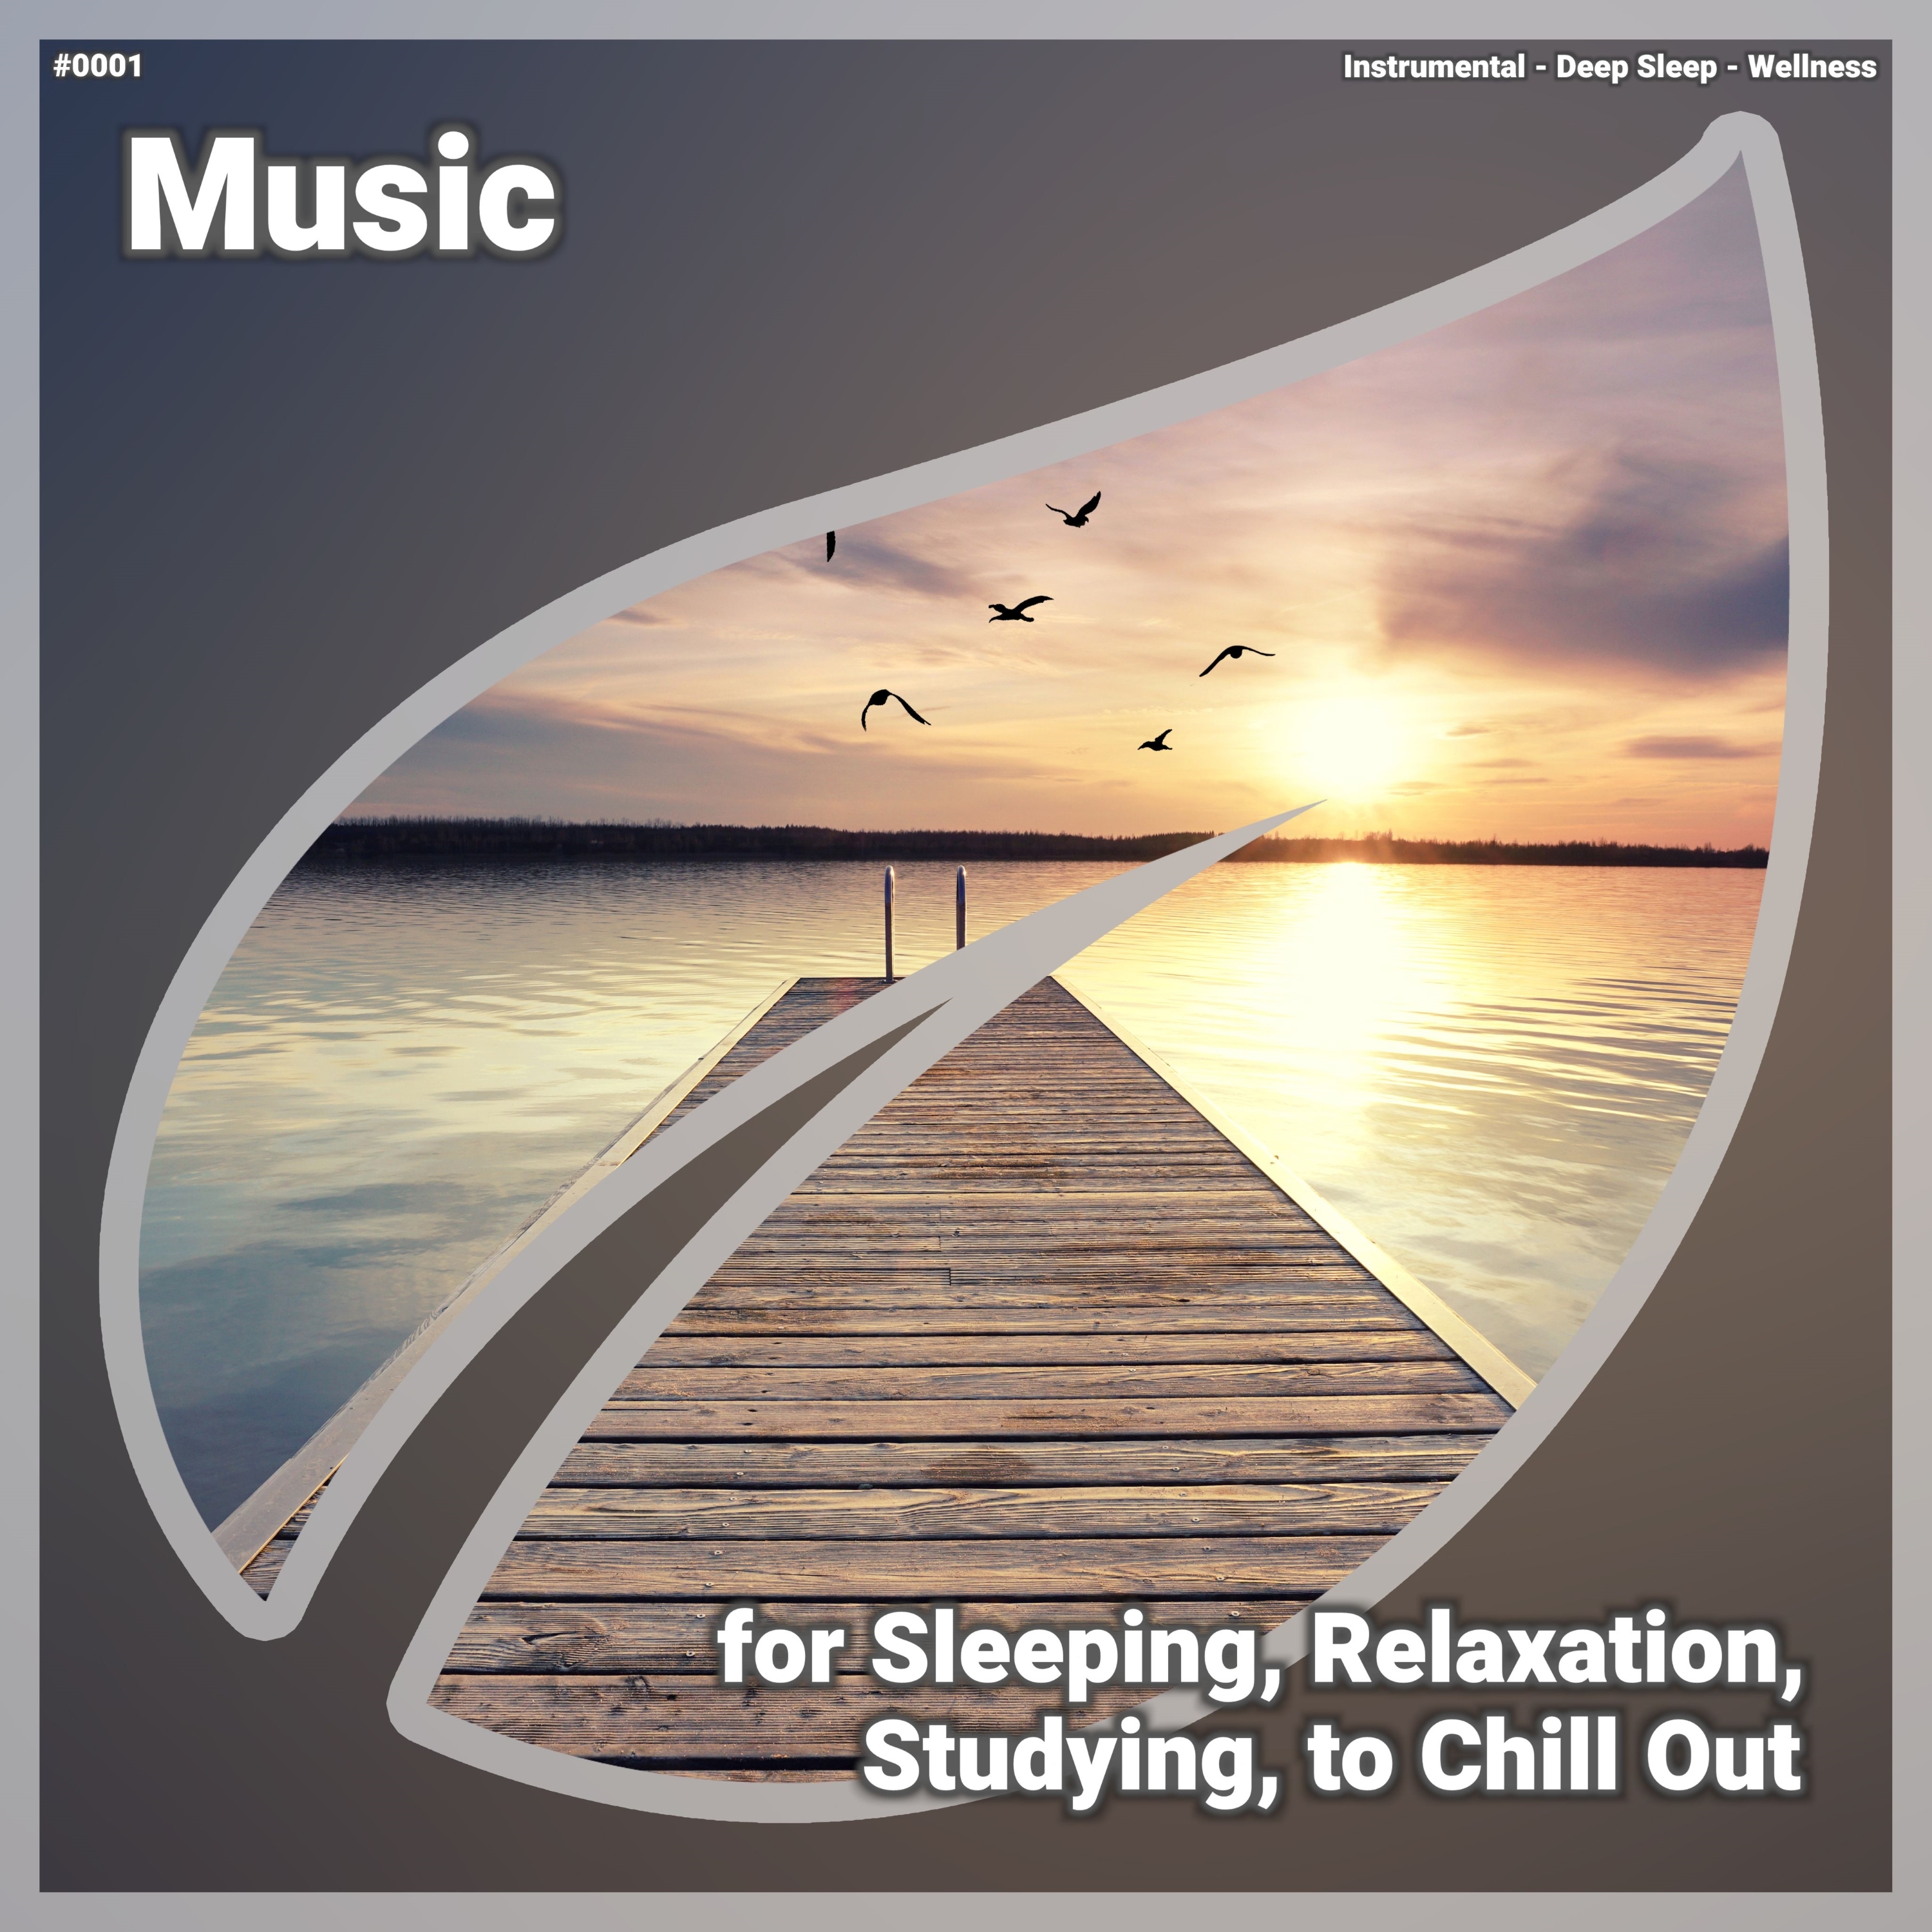 ਡਾਉਨਲੋਡ ਕਰੋ Relaxing Music, Pt. 88